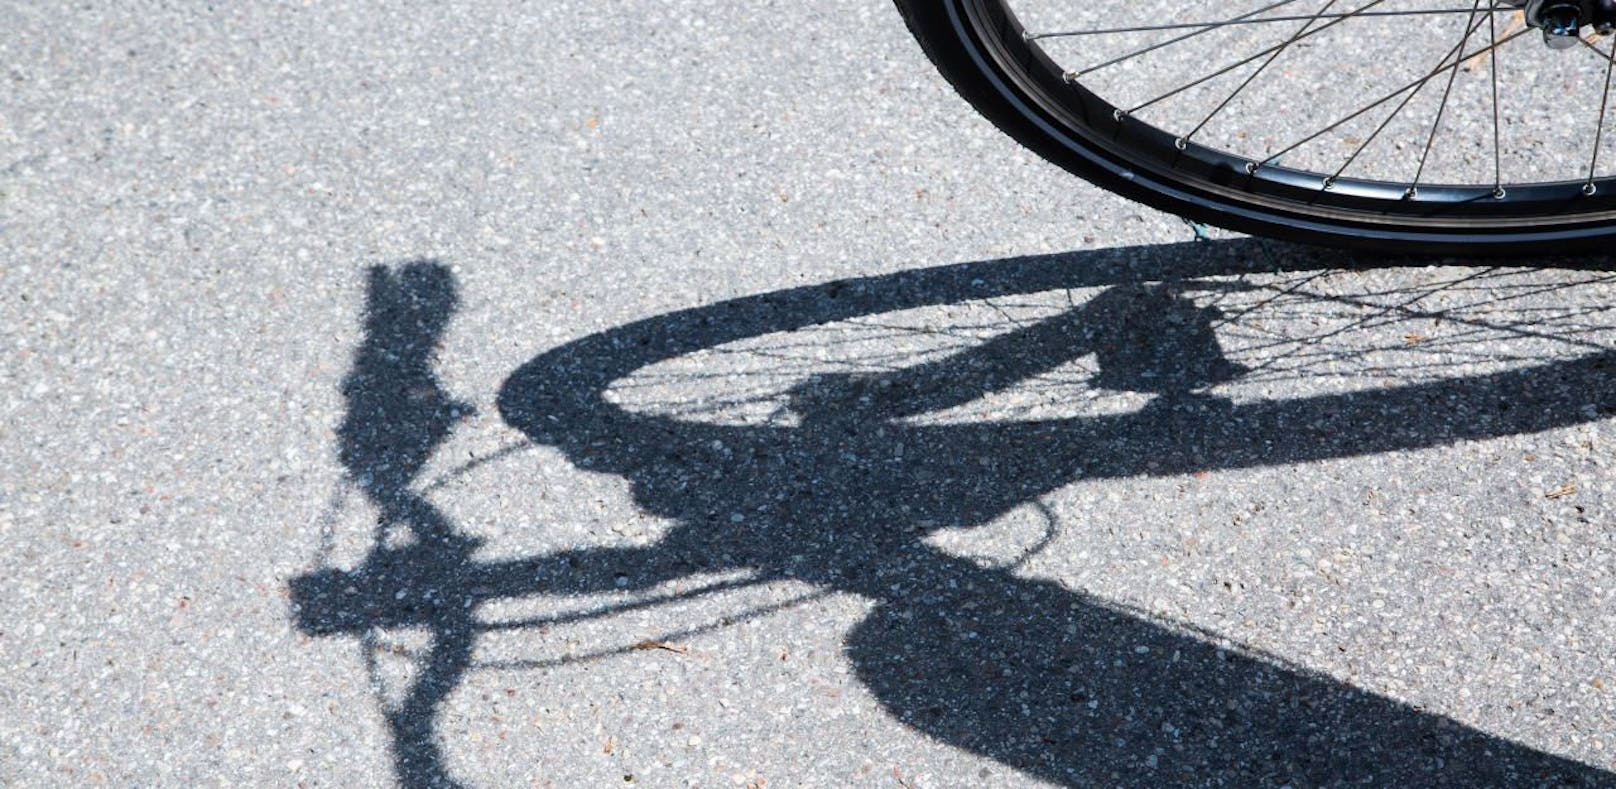 Schwerer Unfall mit Elektro-Fahrrad: Der Biker starb im Spital.